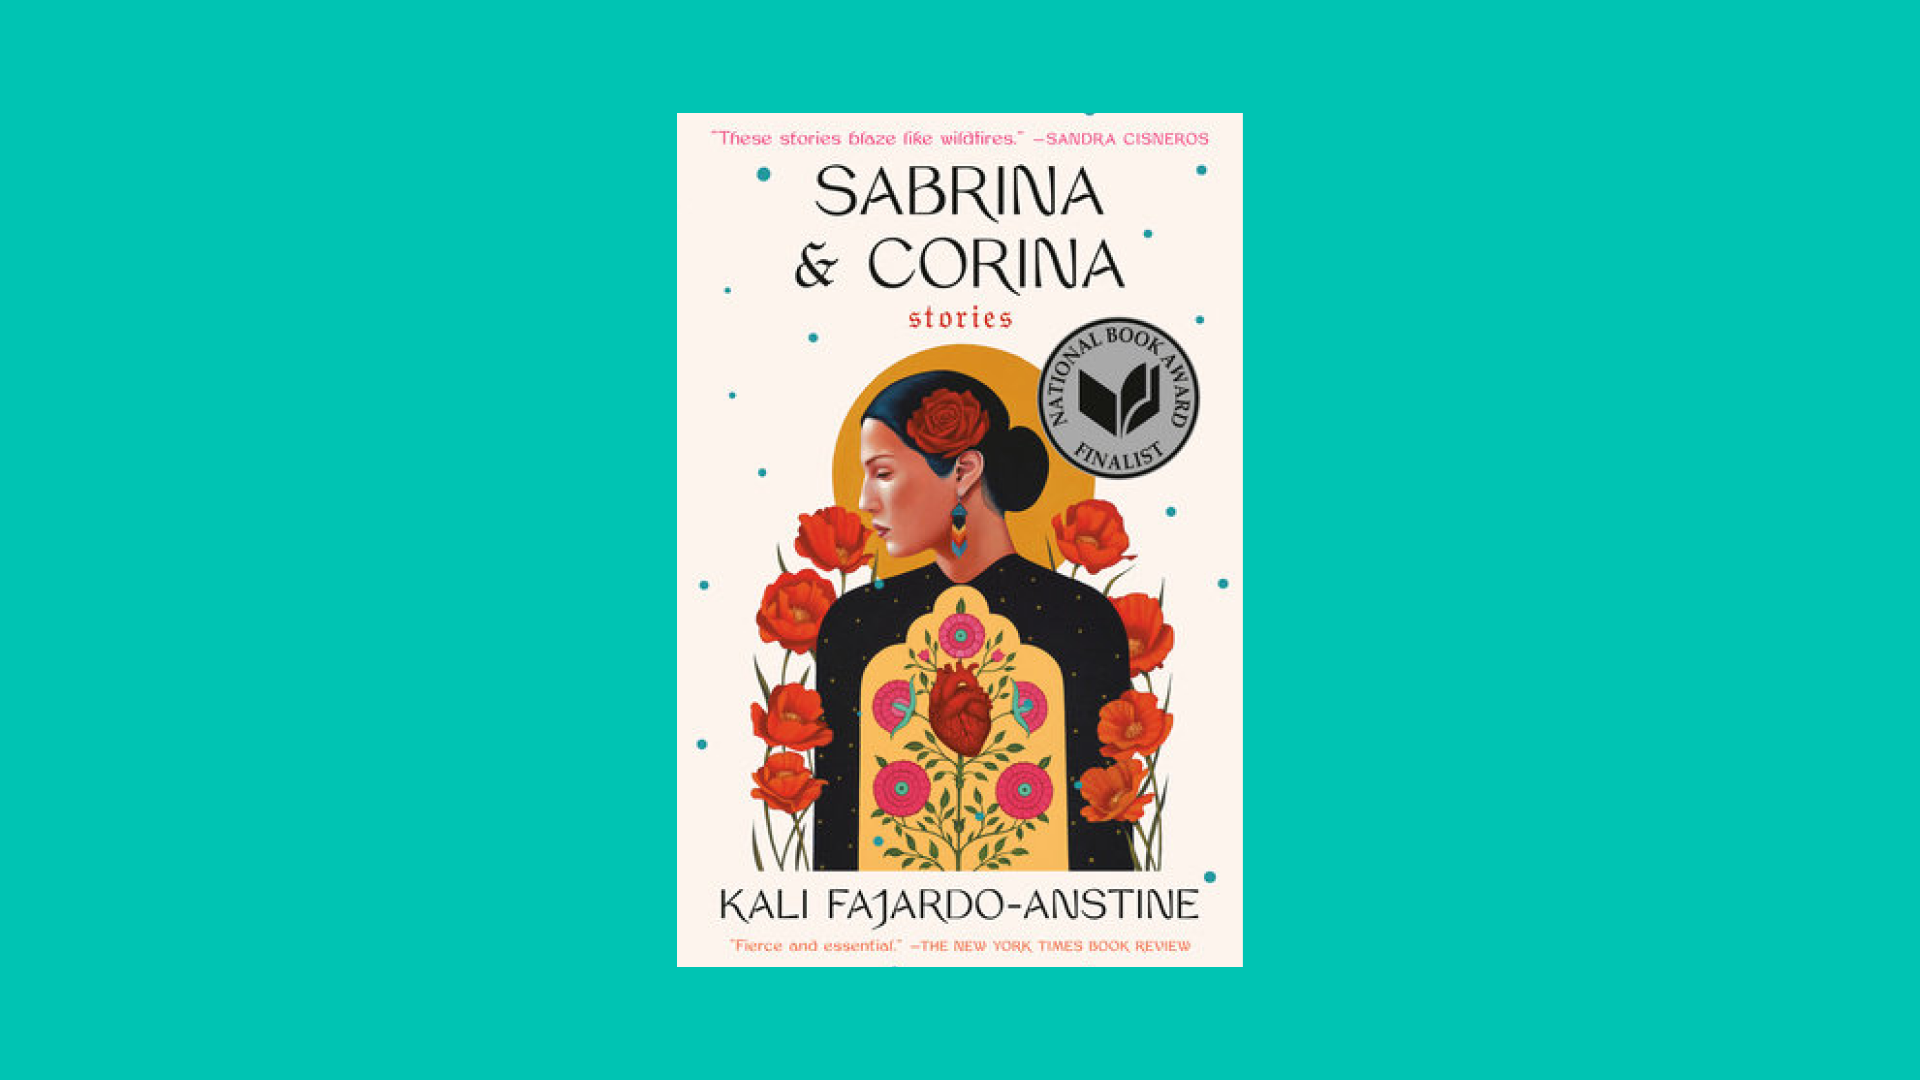 “Sabrina & Corina” by Kali Fajardo-Anstine